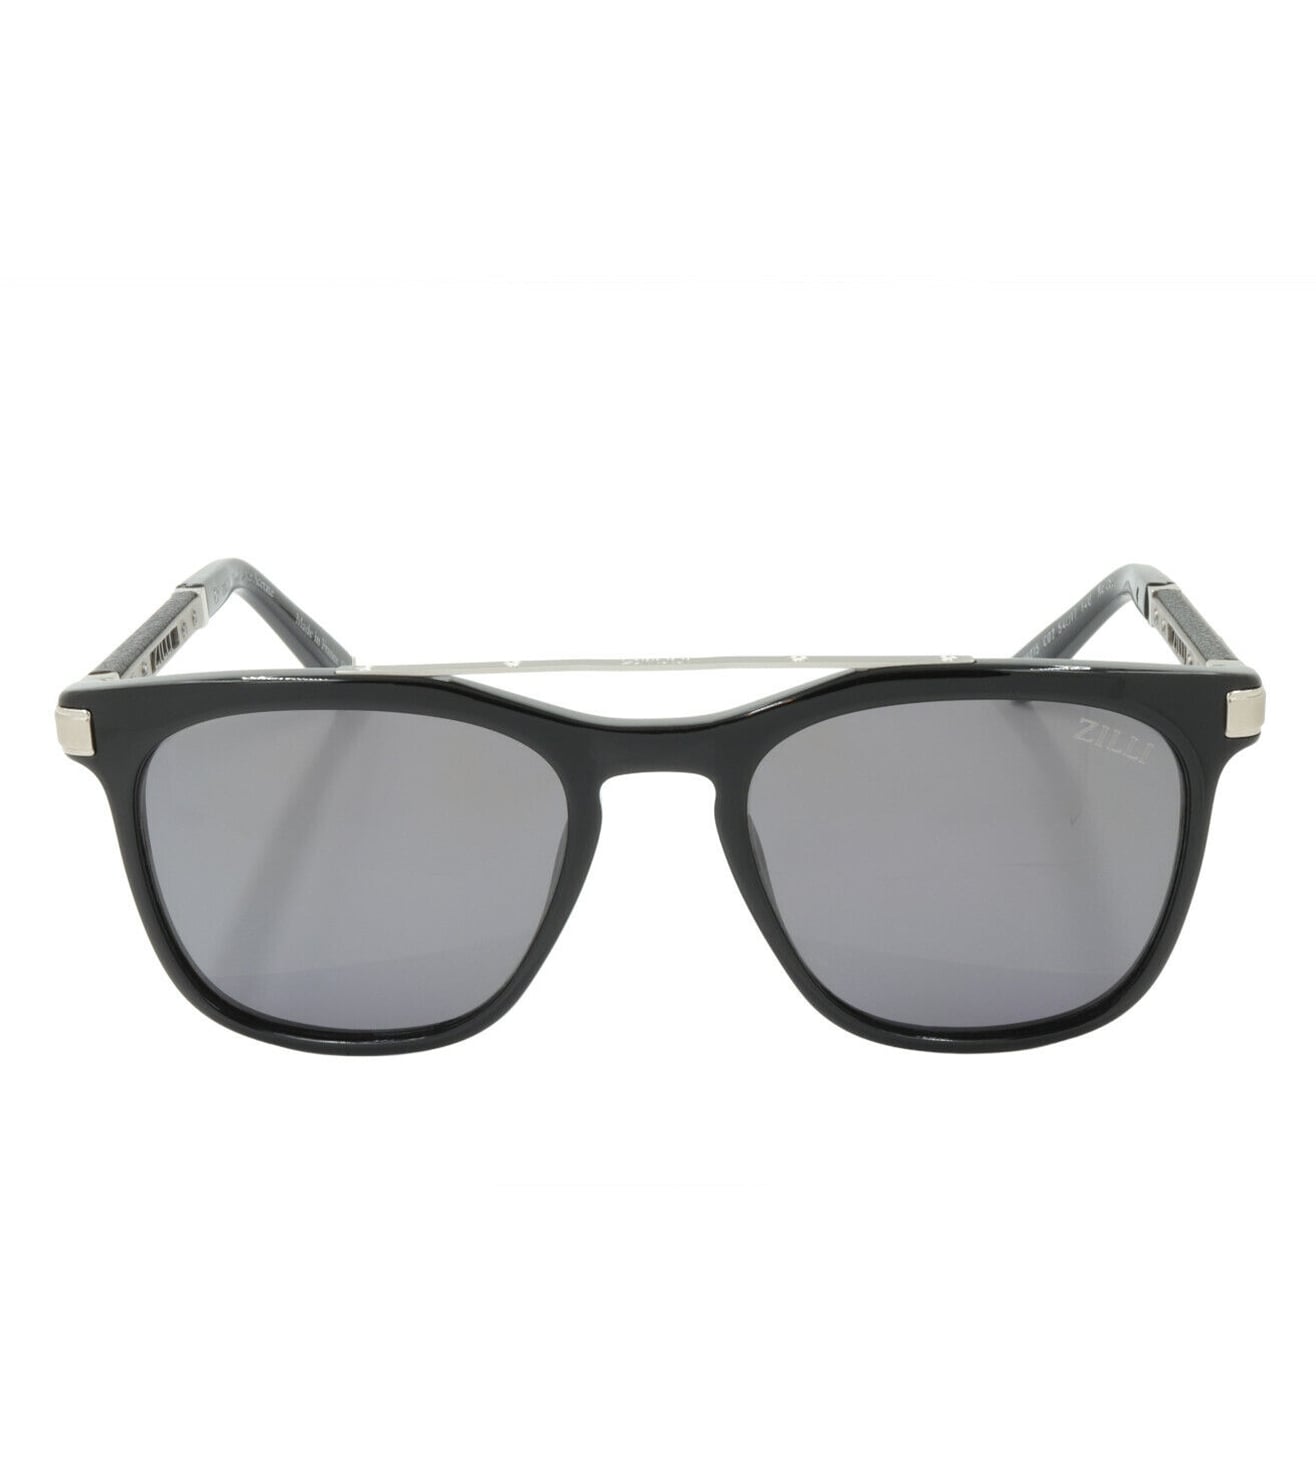 Zilli Men's Grey Square Sunglasses